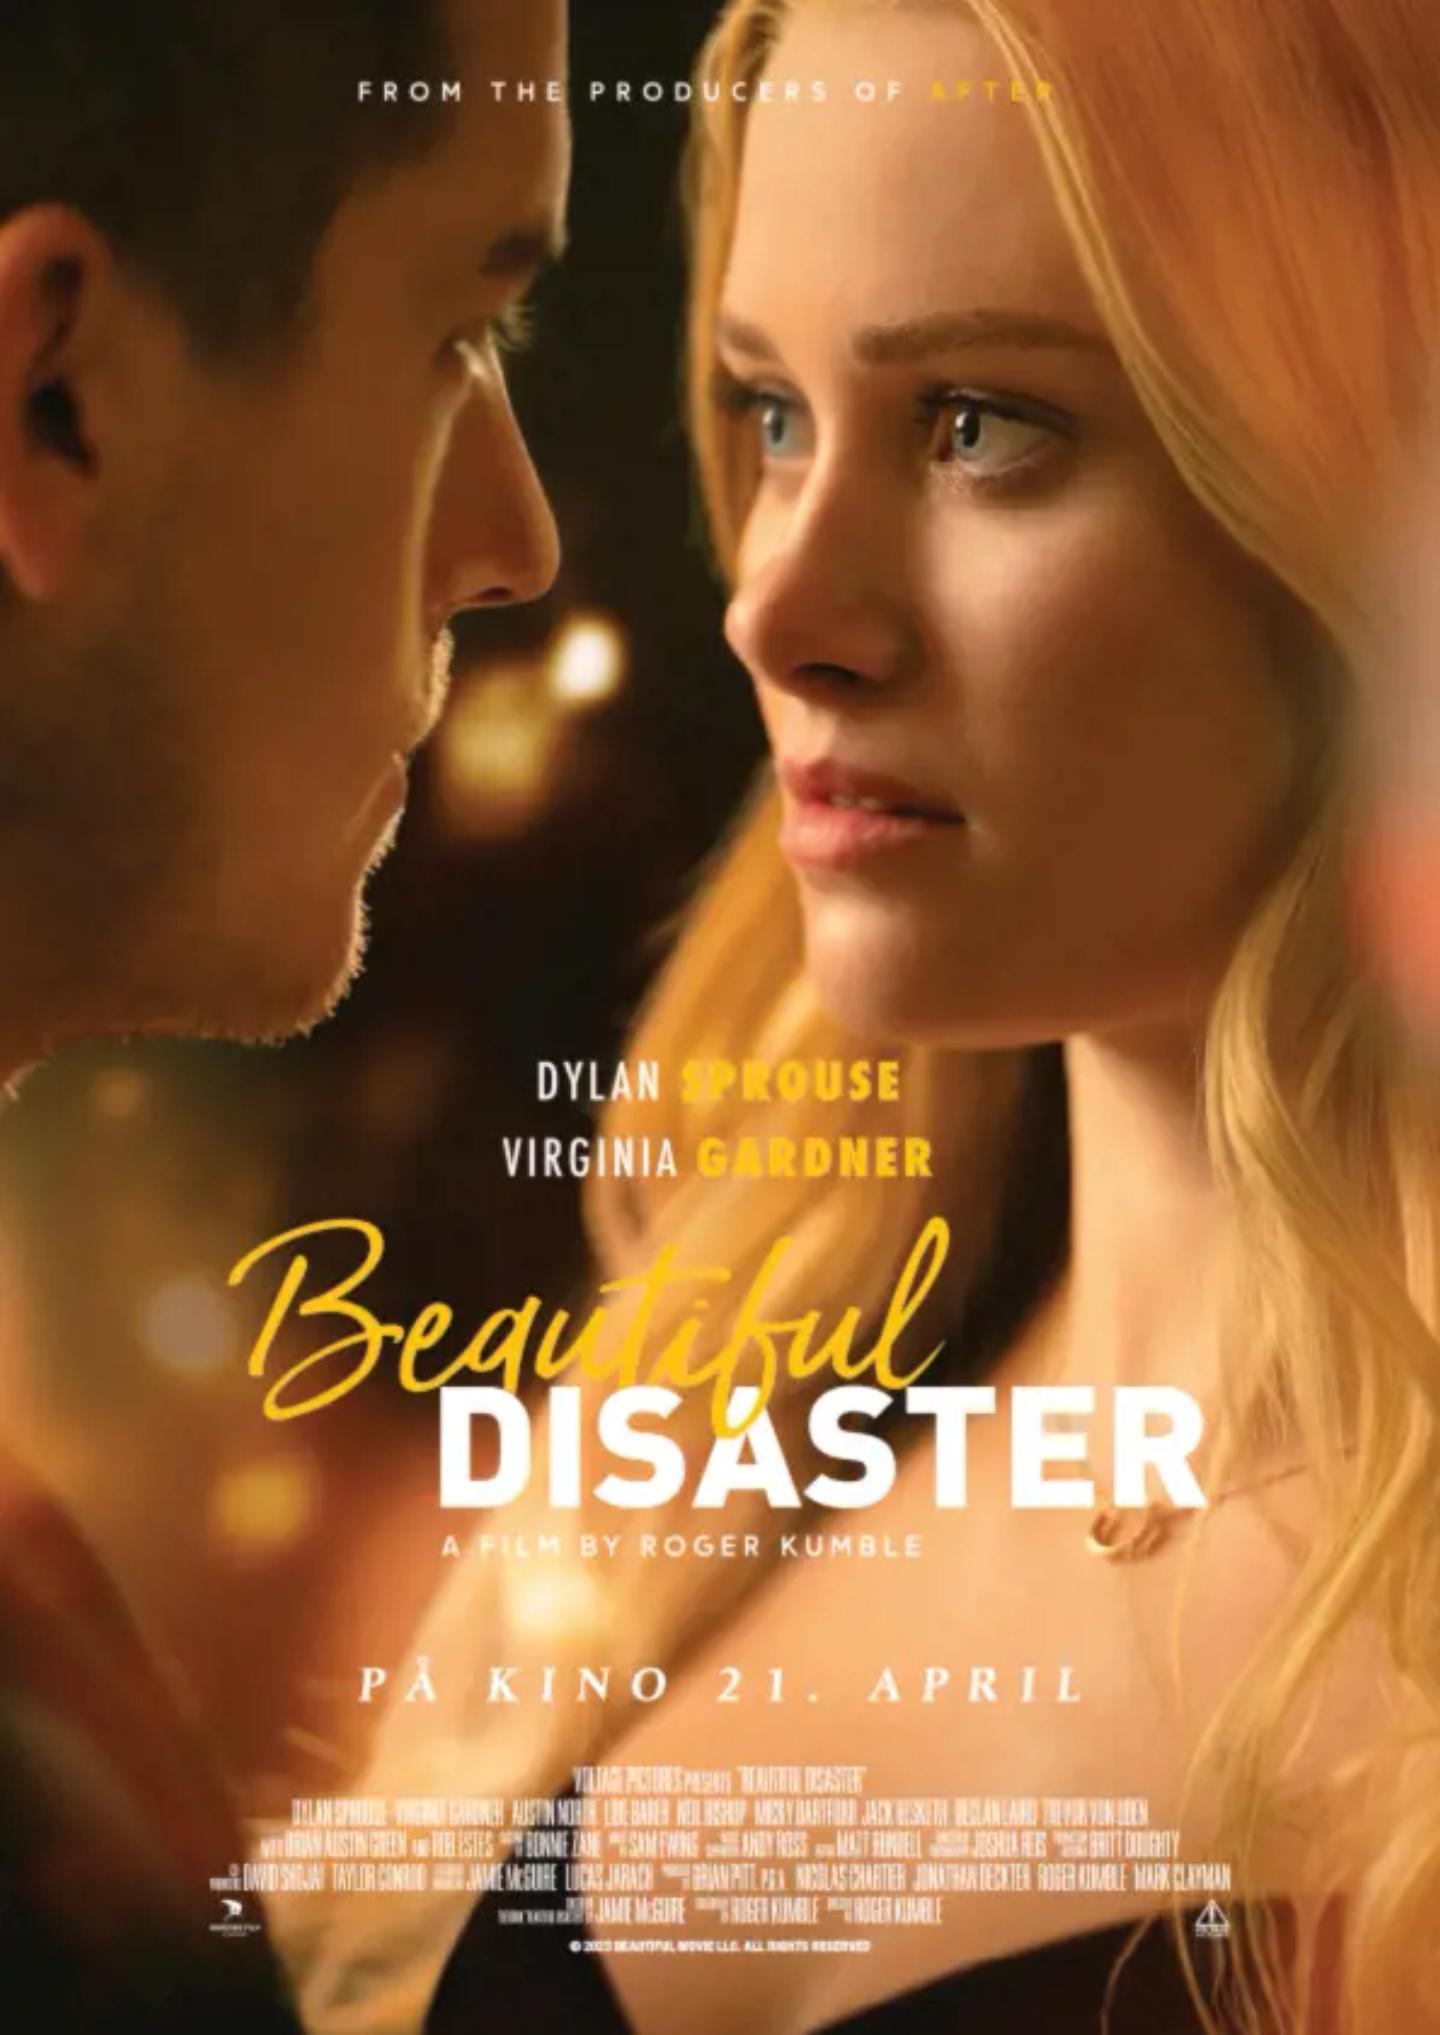 Plakat for 'Beautiful disaster'